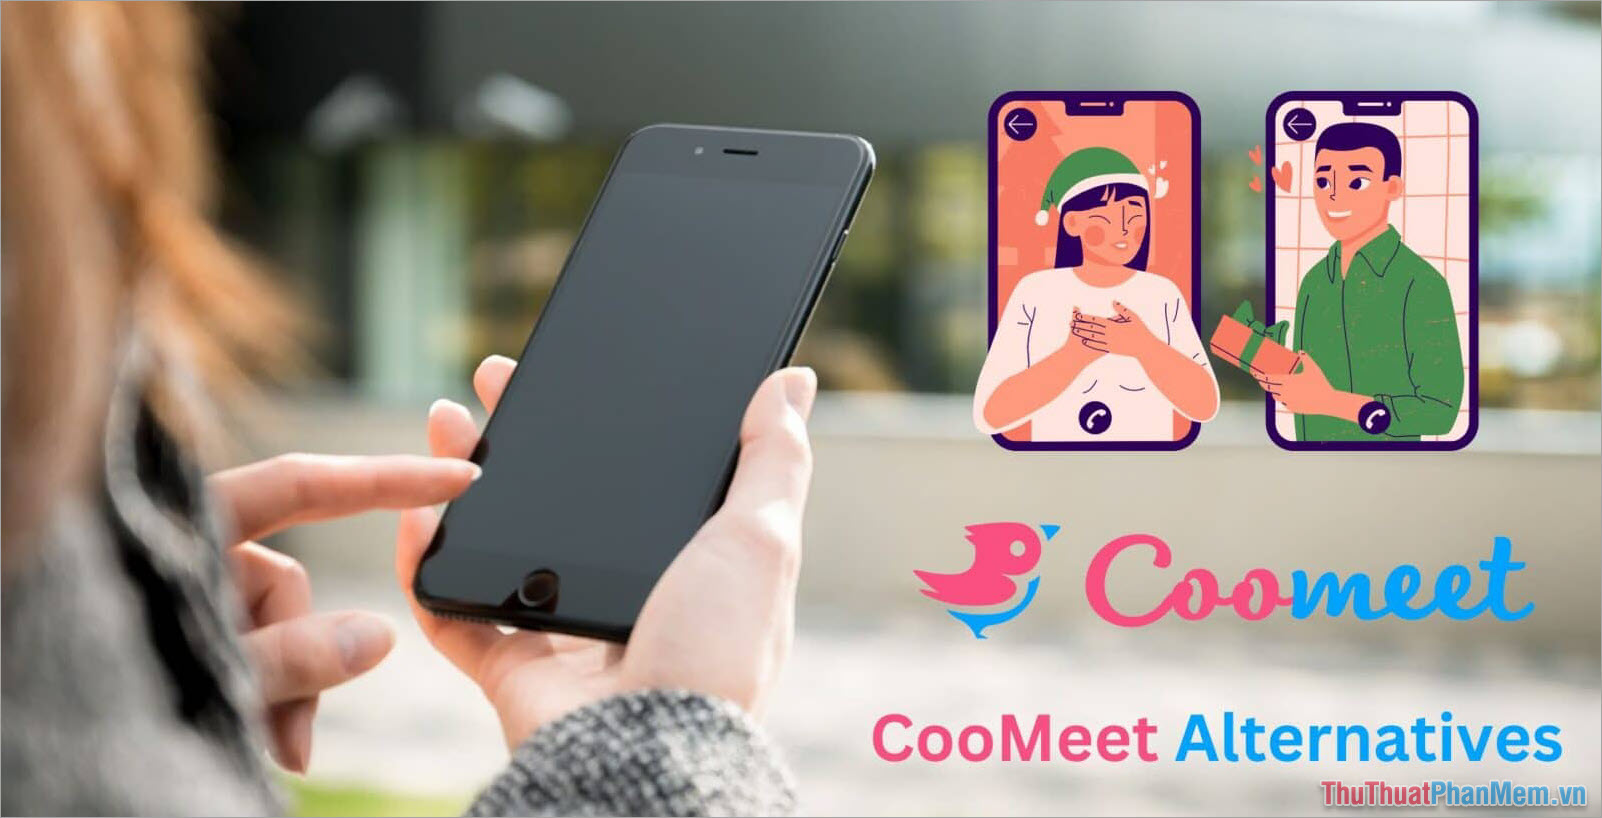 CooMeet – Ứng dụng nói chuyện cùng người lạ xuyên quốc gia